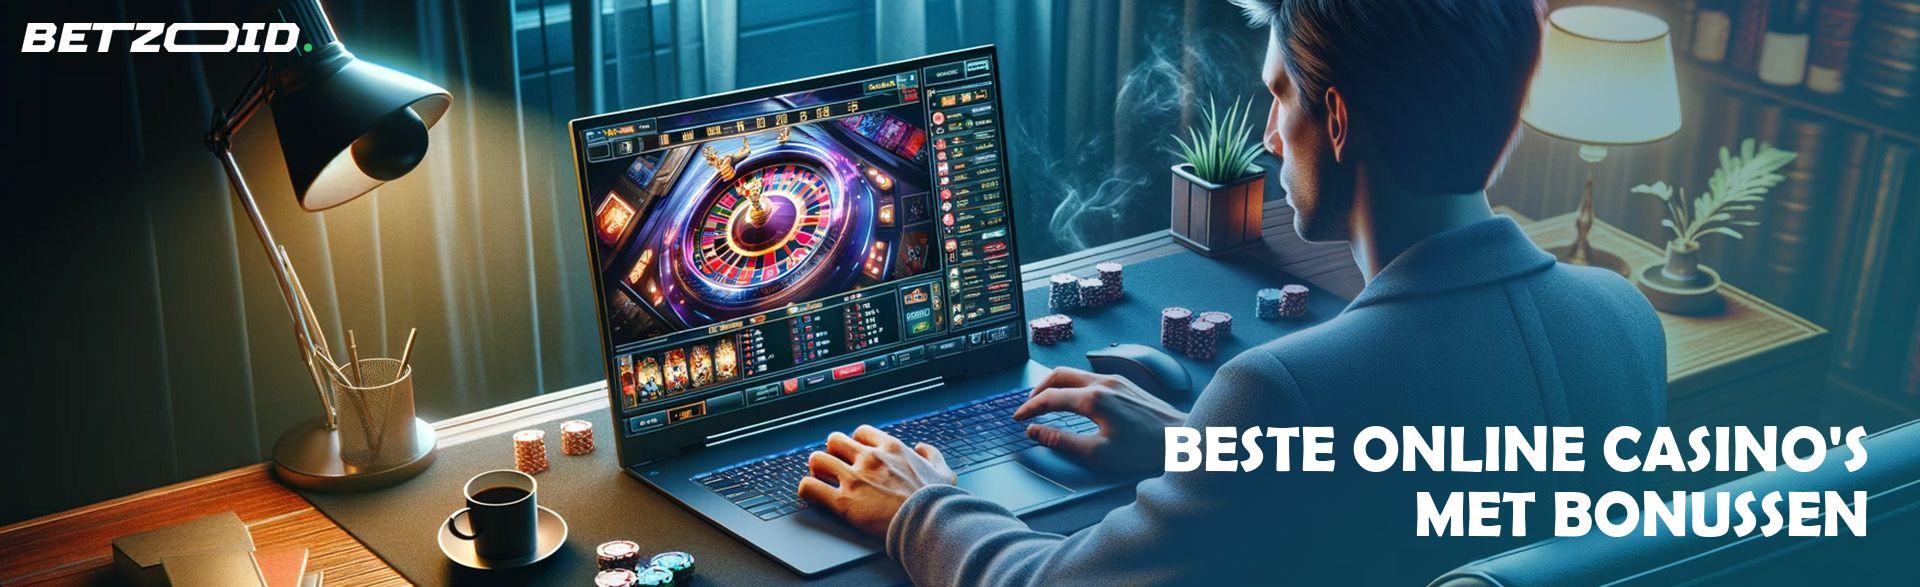 Beste Online Casino'